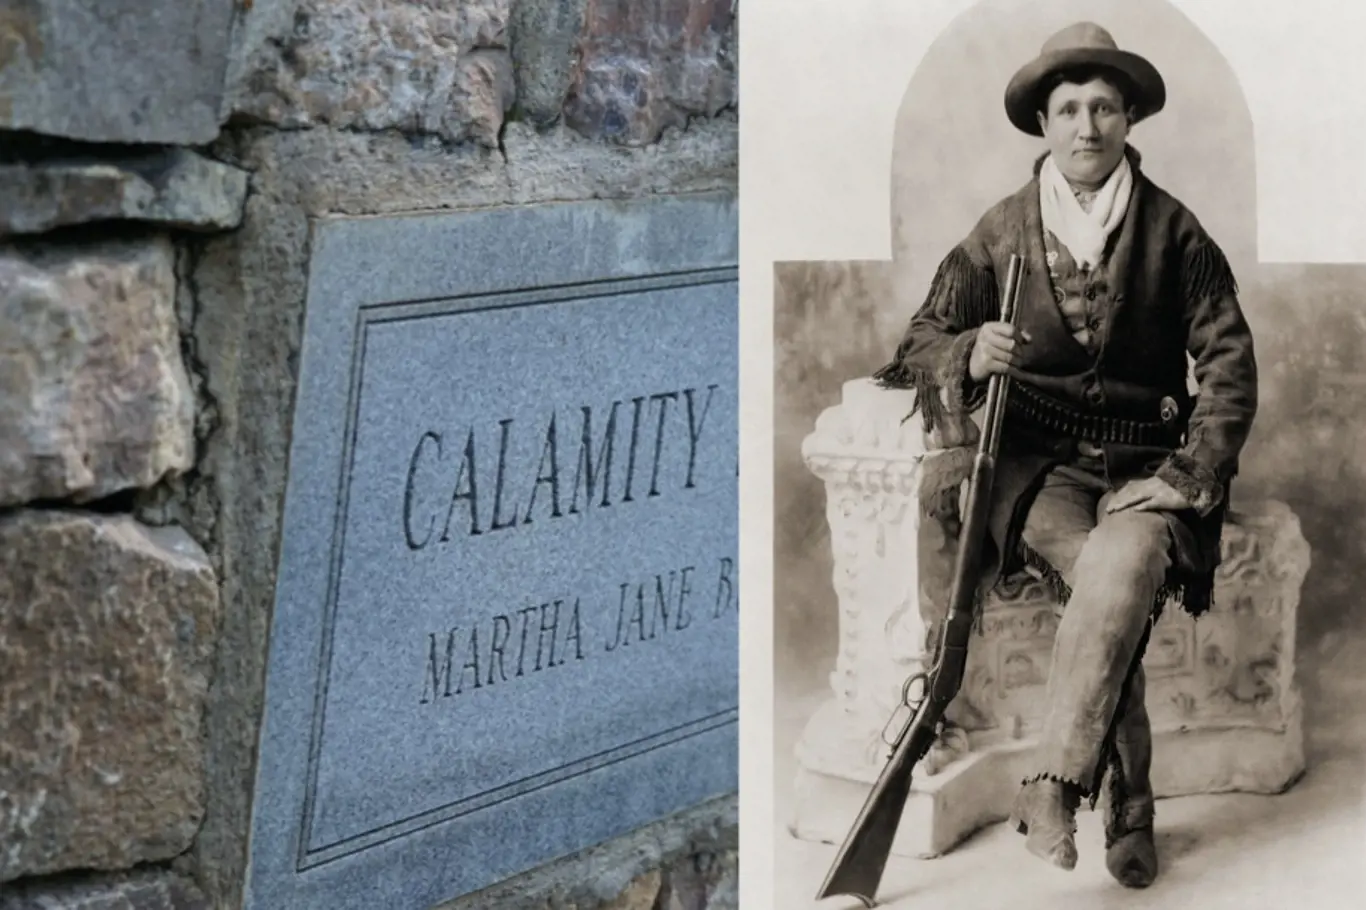 Odvážná skautka Marta alias Calamity Jane byla zapojena do několika vojenských kampaní během válek s Indiány.